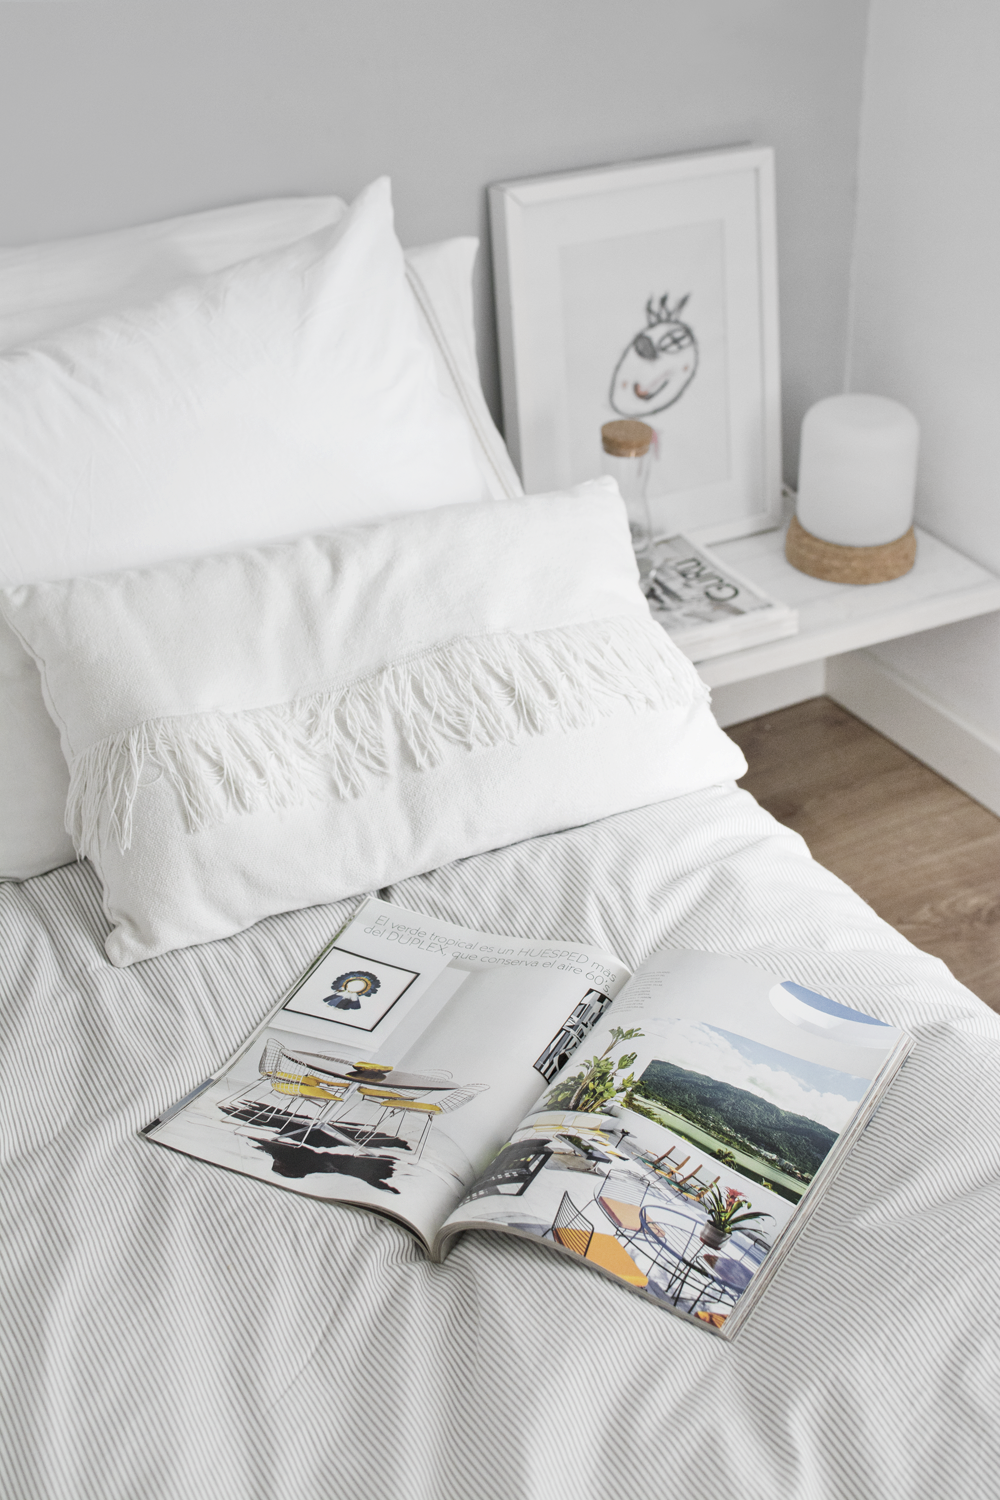 DIY - Minimalist bedside table for a Nordic style bedroom / DIY - Mesilla de noche minimalista en dormitorio estilo nórdico